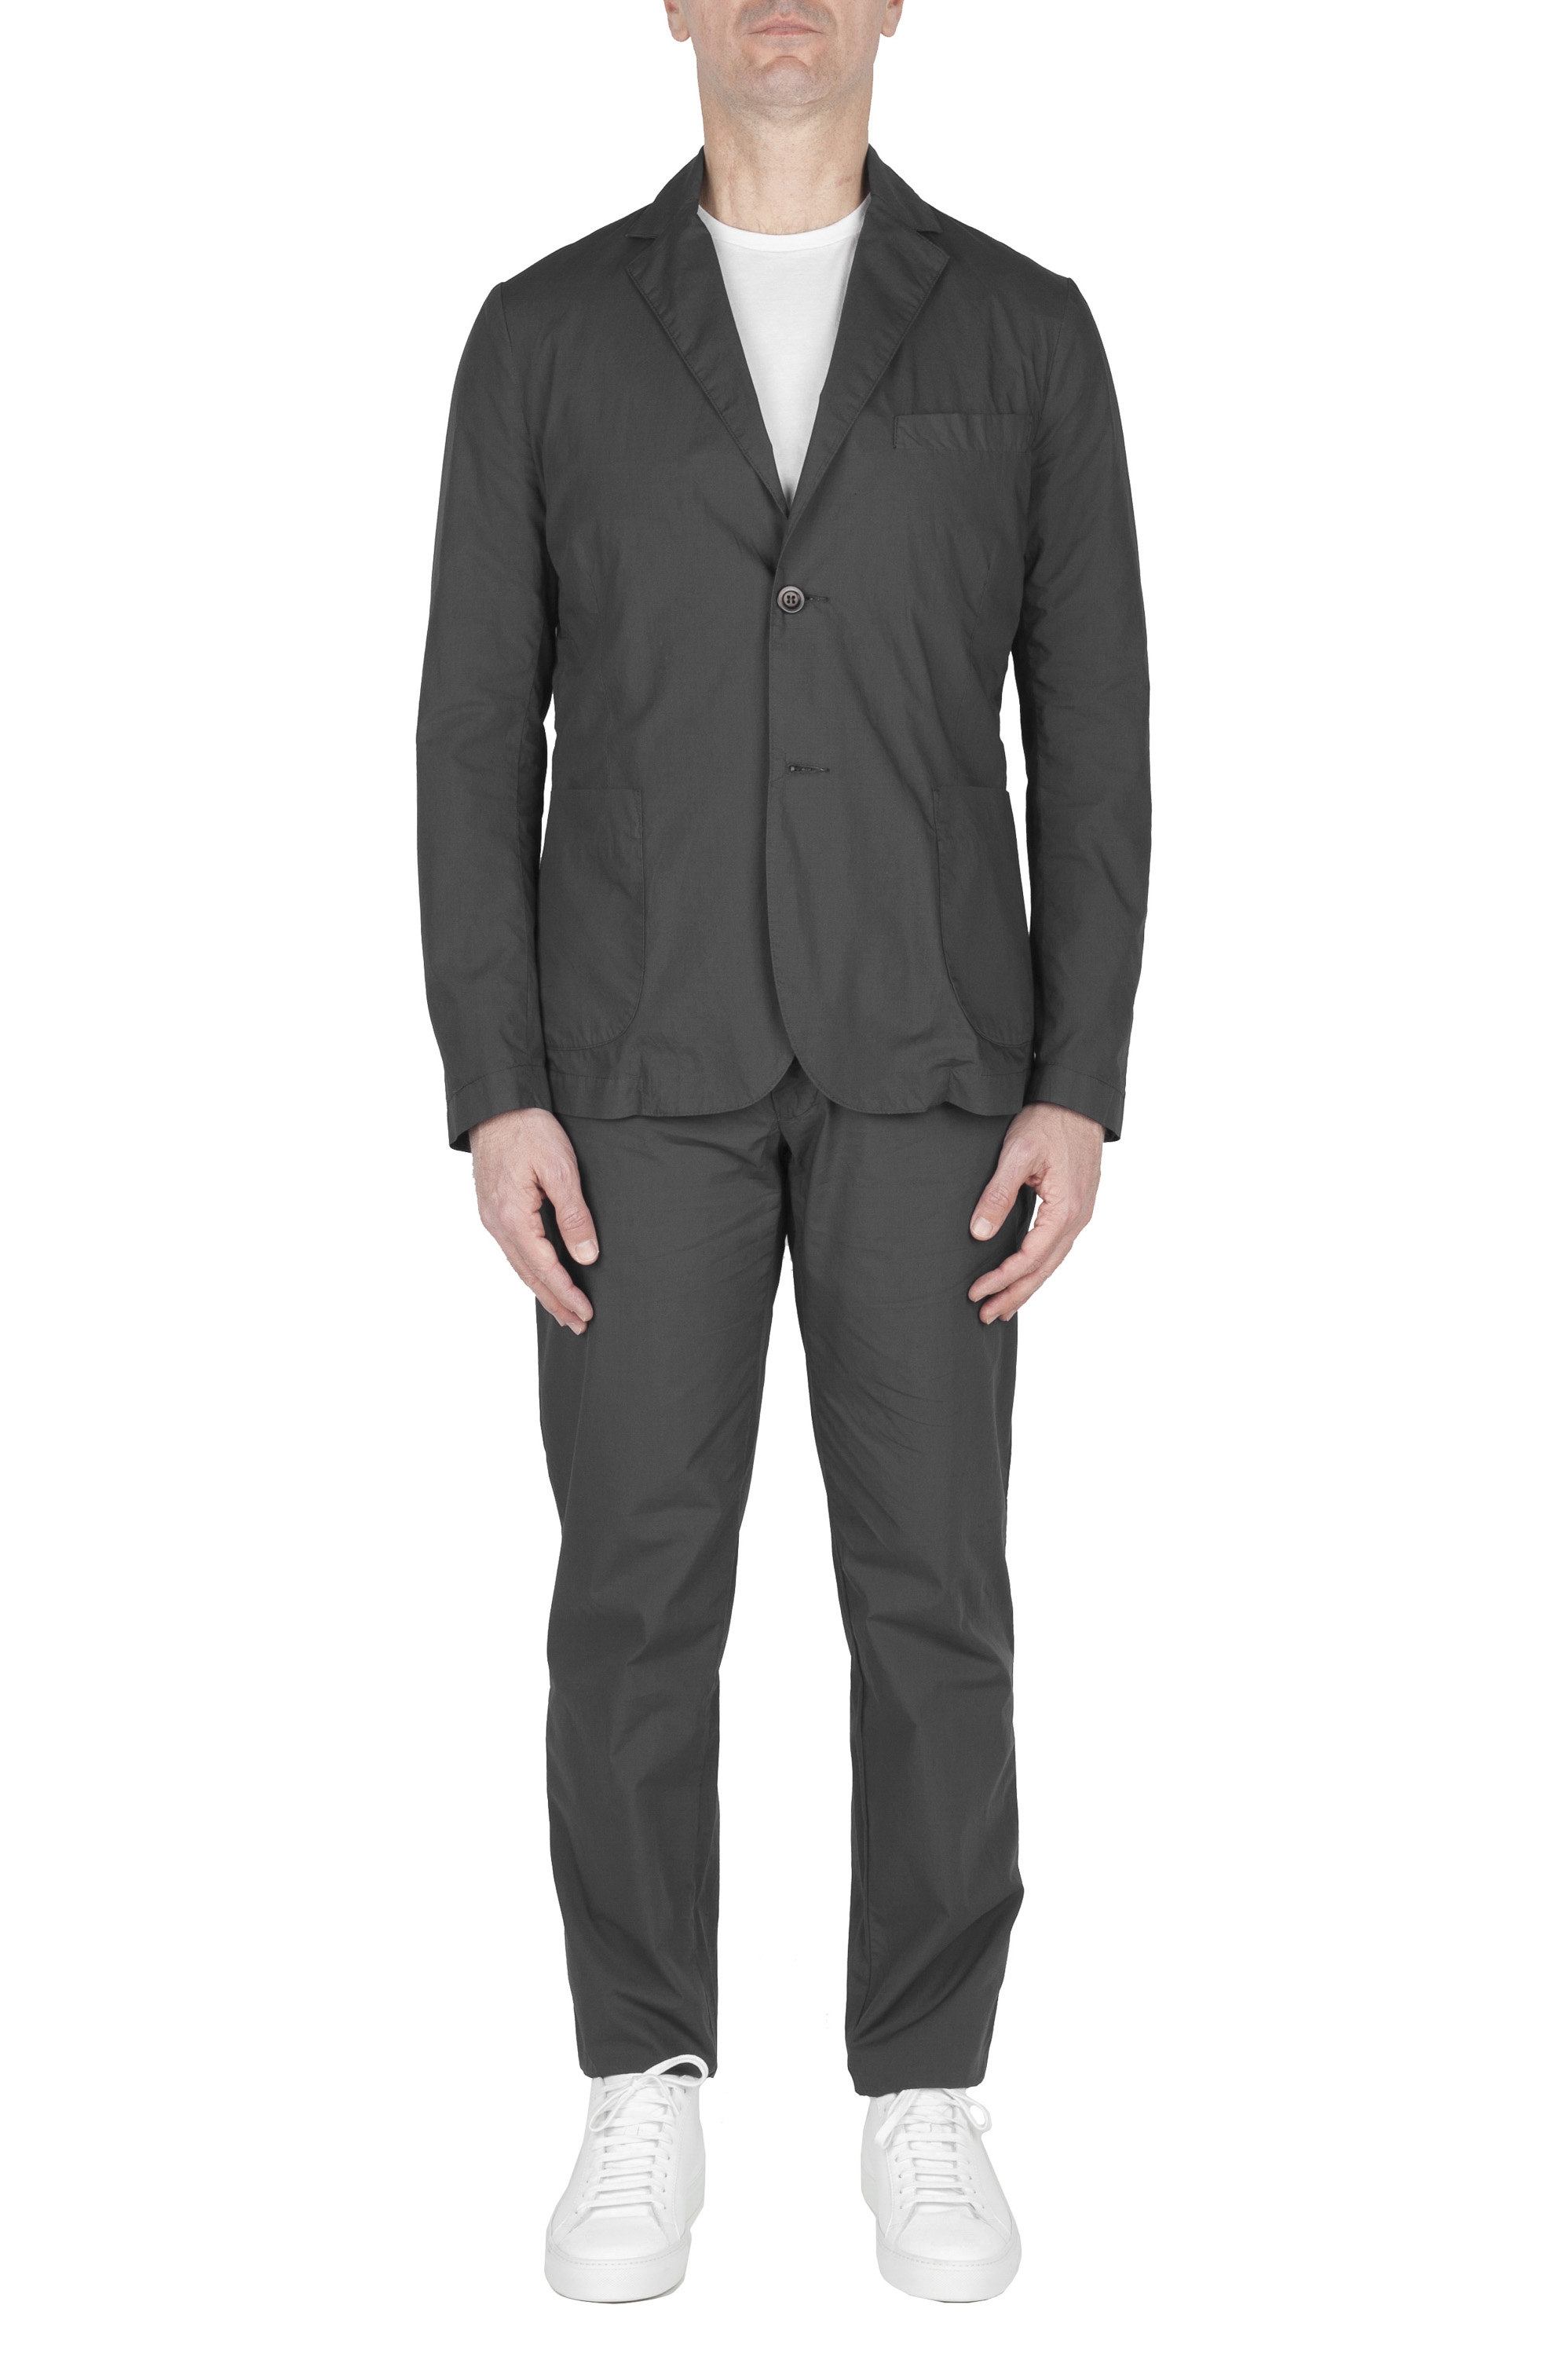 SBU 03058_2021AW Chaqueta y pantalón de traje deportivo de algodón gris oscuro 01